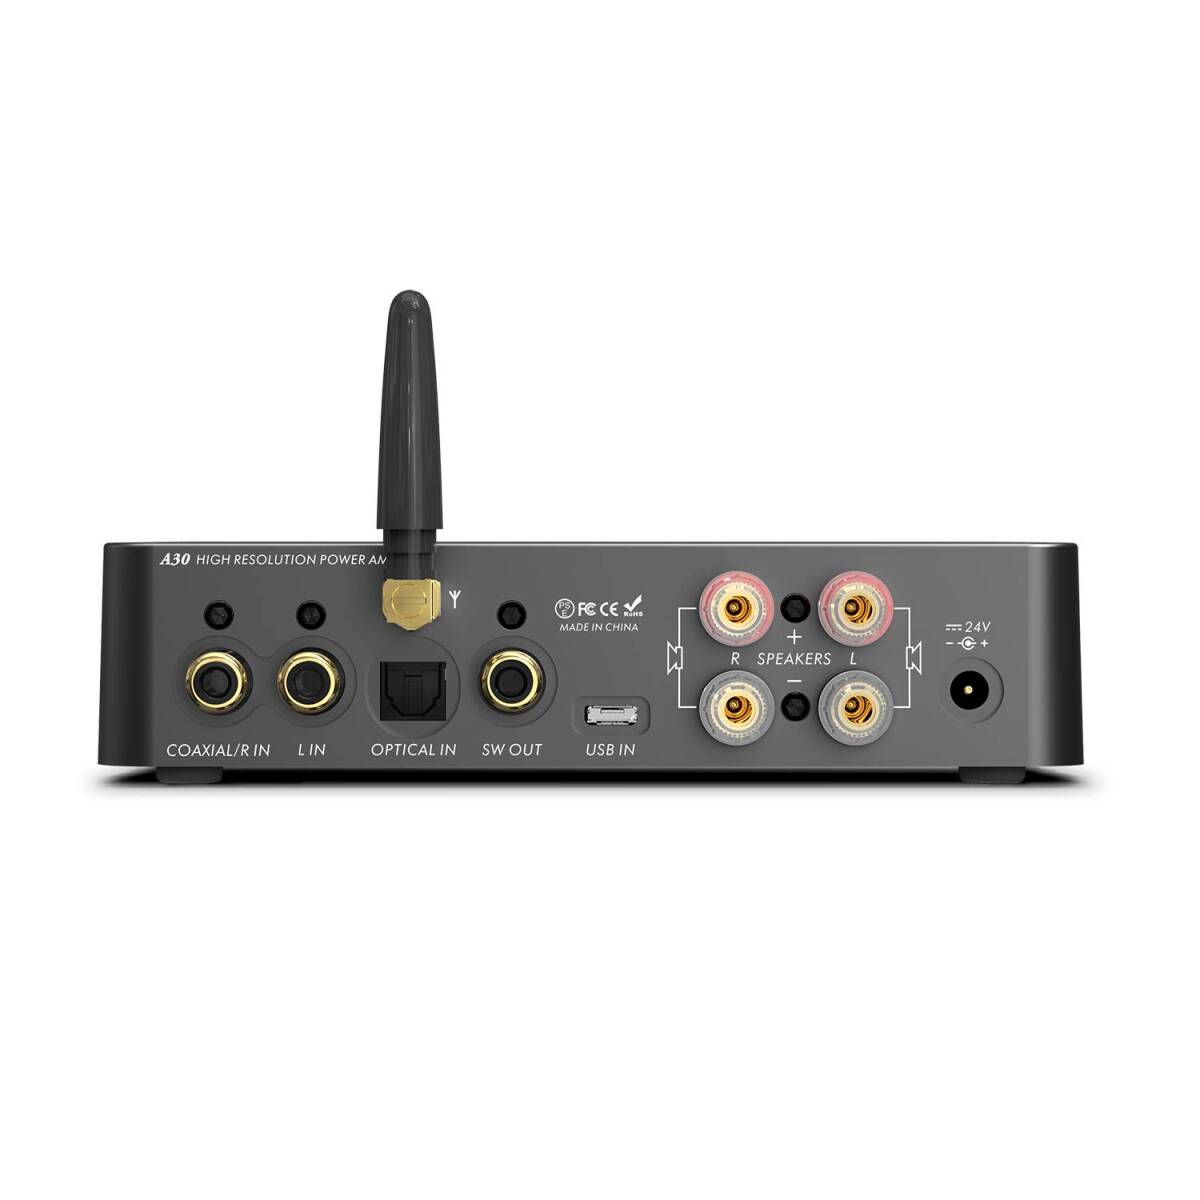 LOXJIE A30 power amplifier HI-FI stereo digital amplifier DAC headphone amplifier 